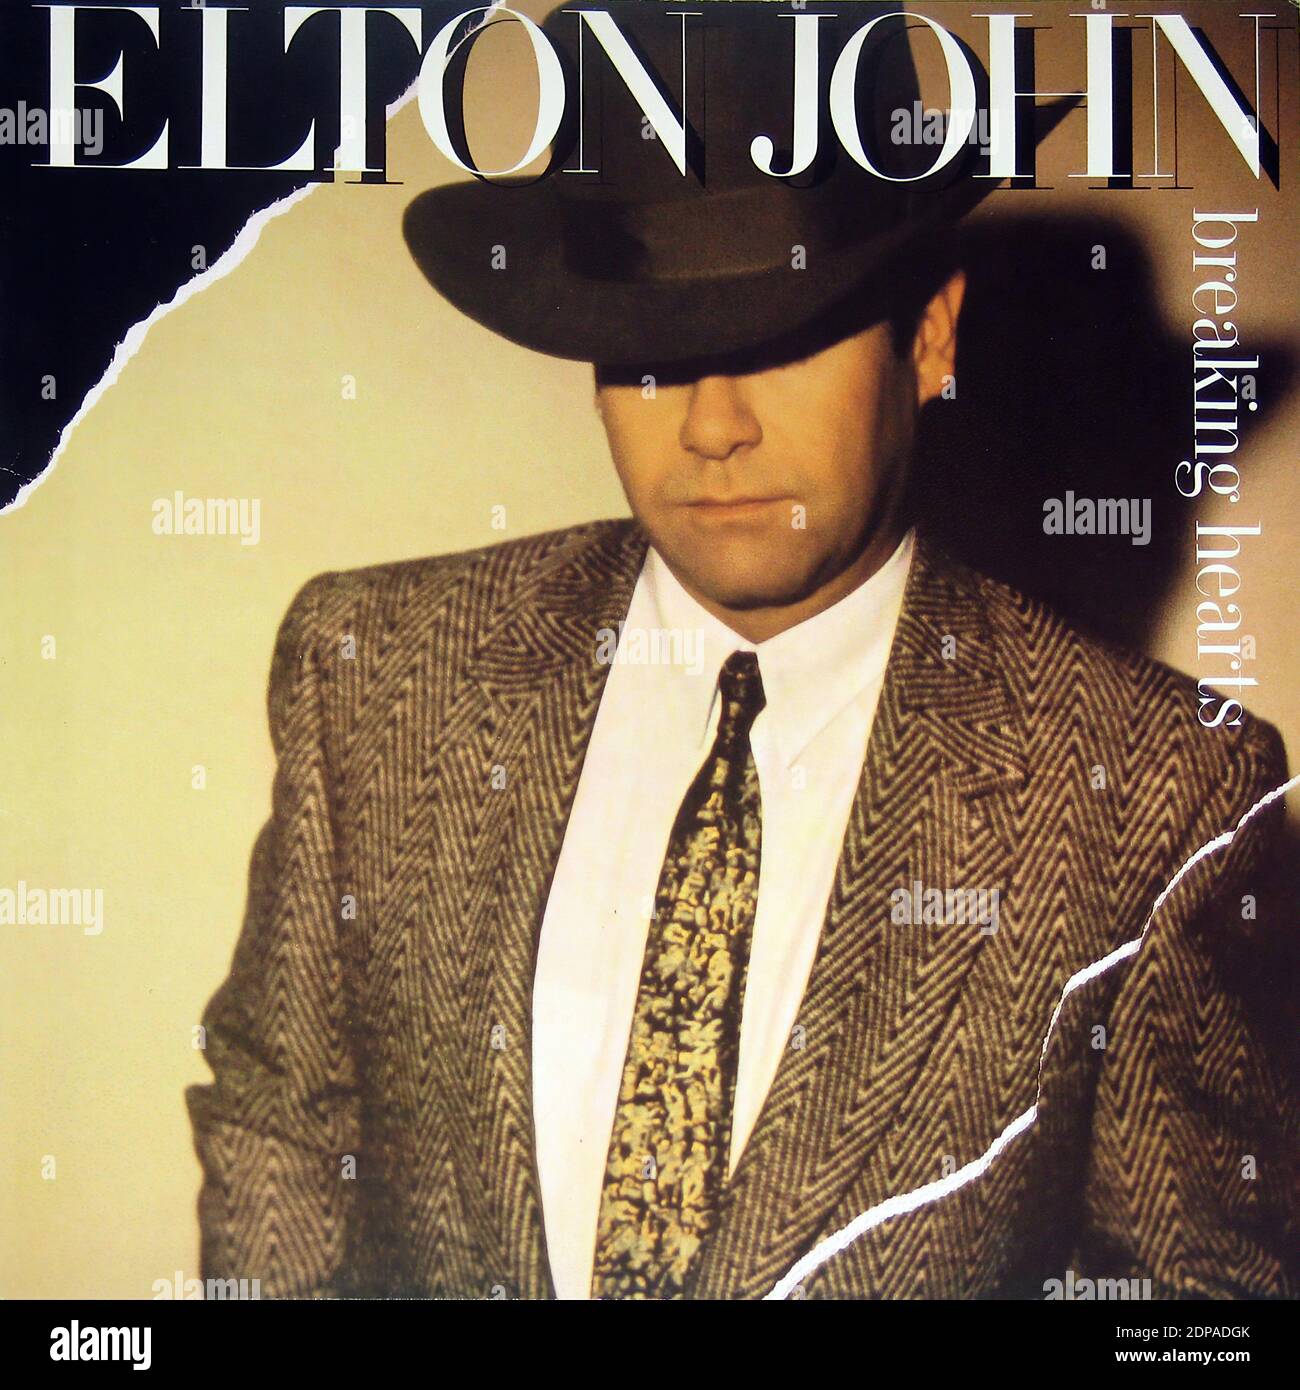 elton john album cover images